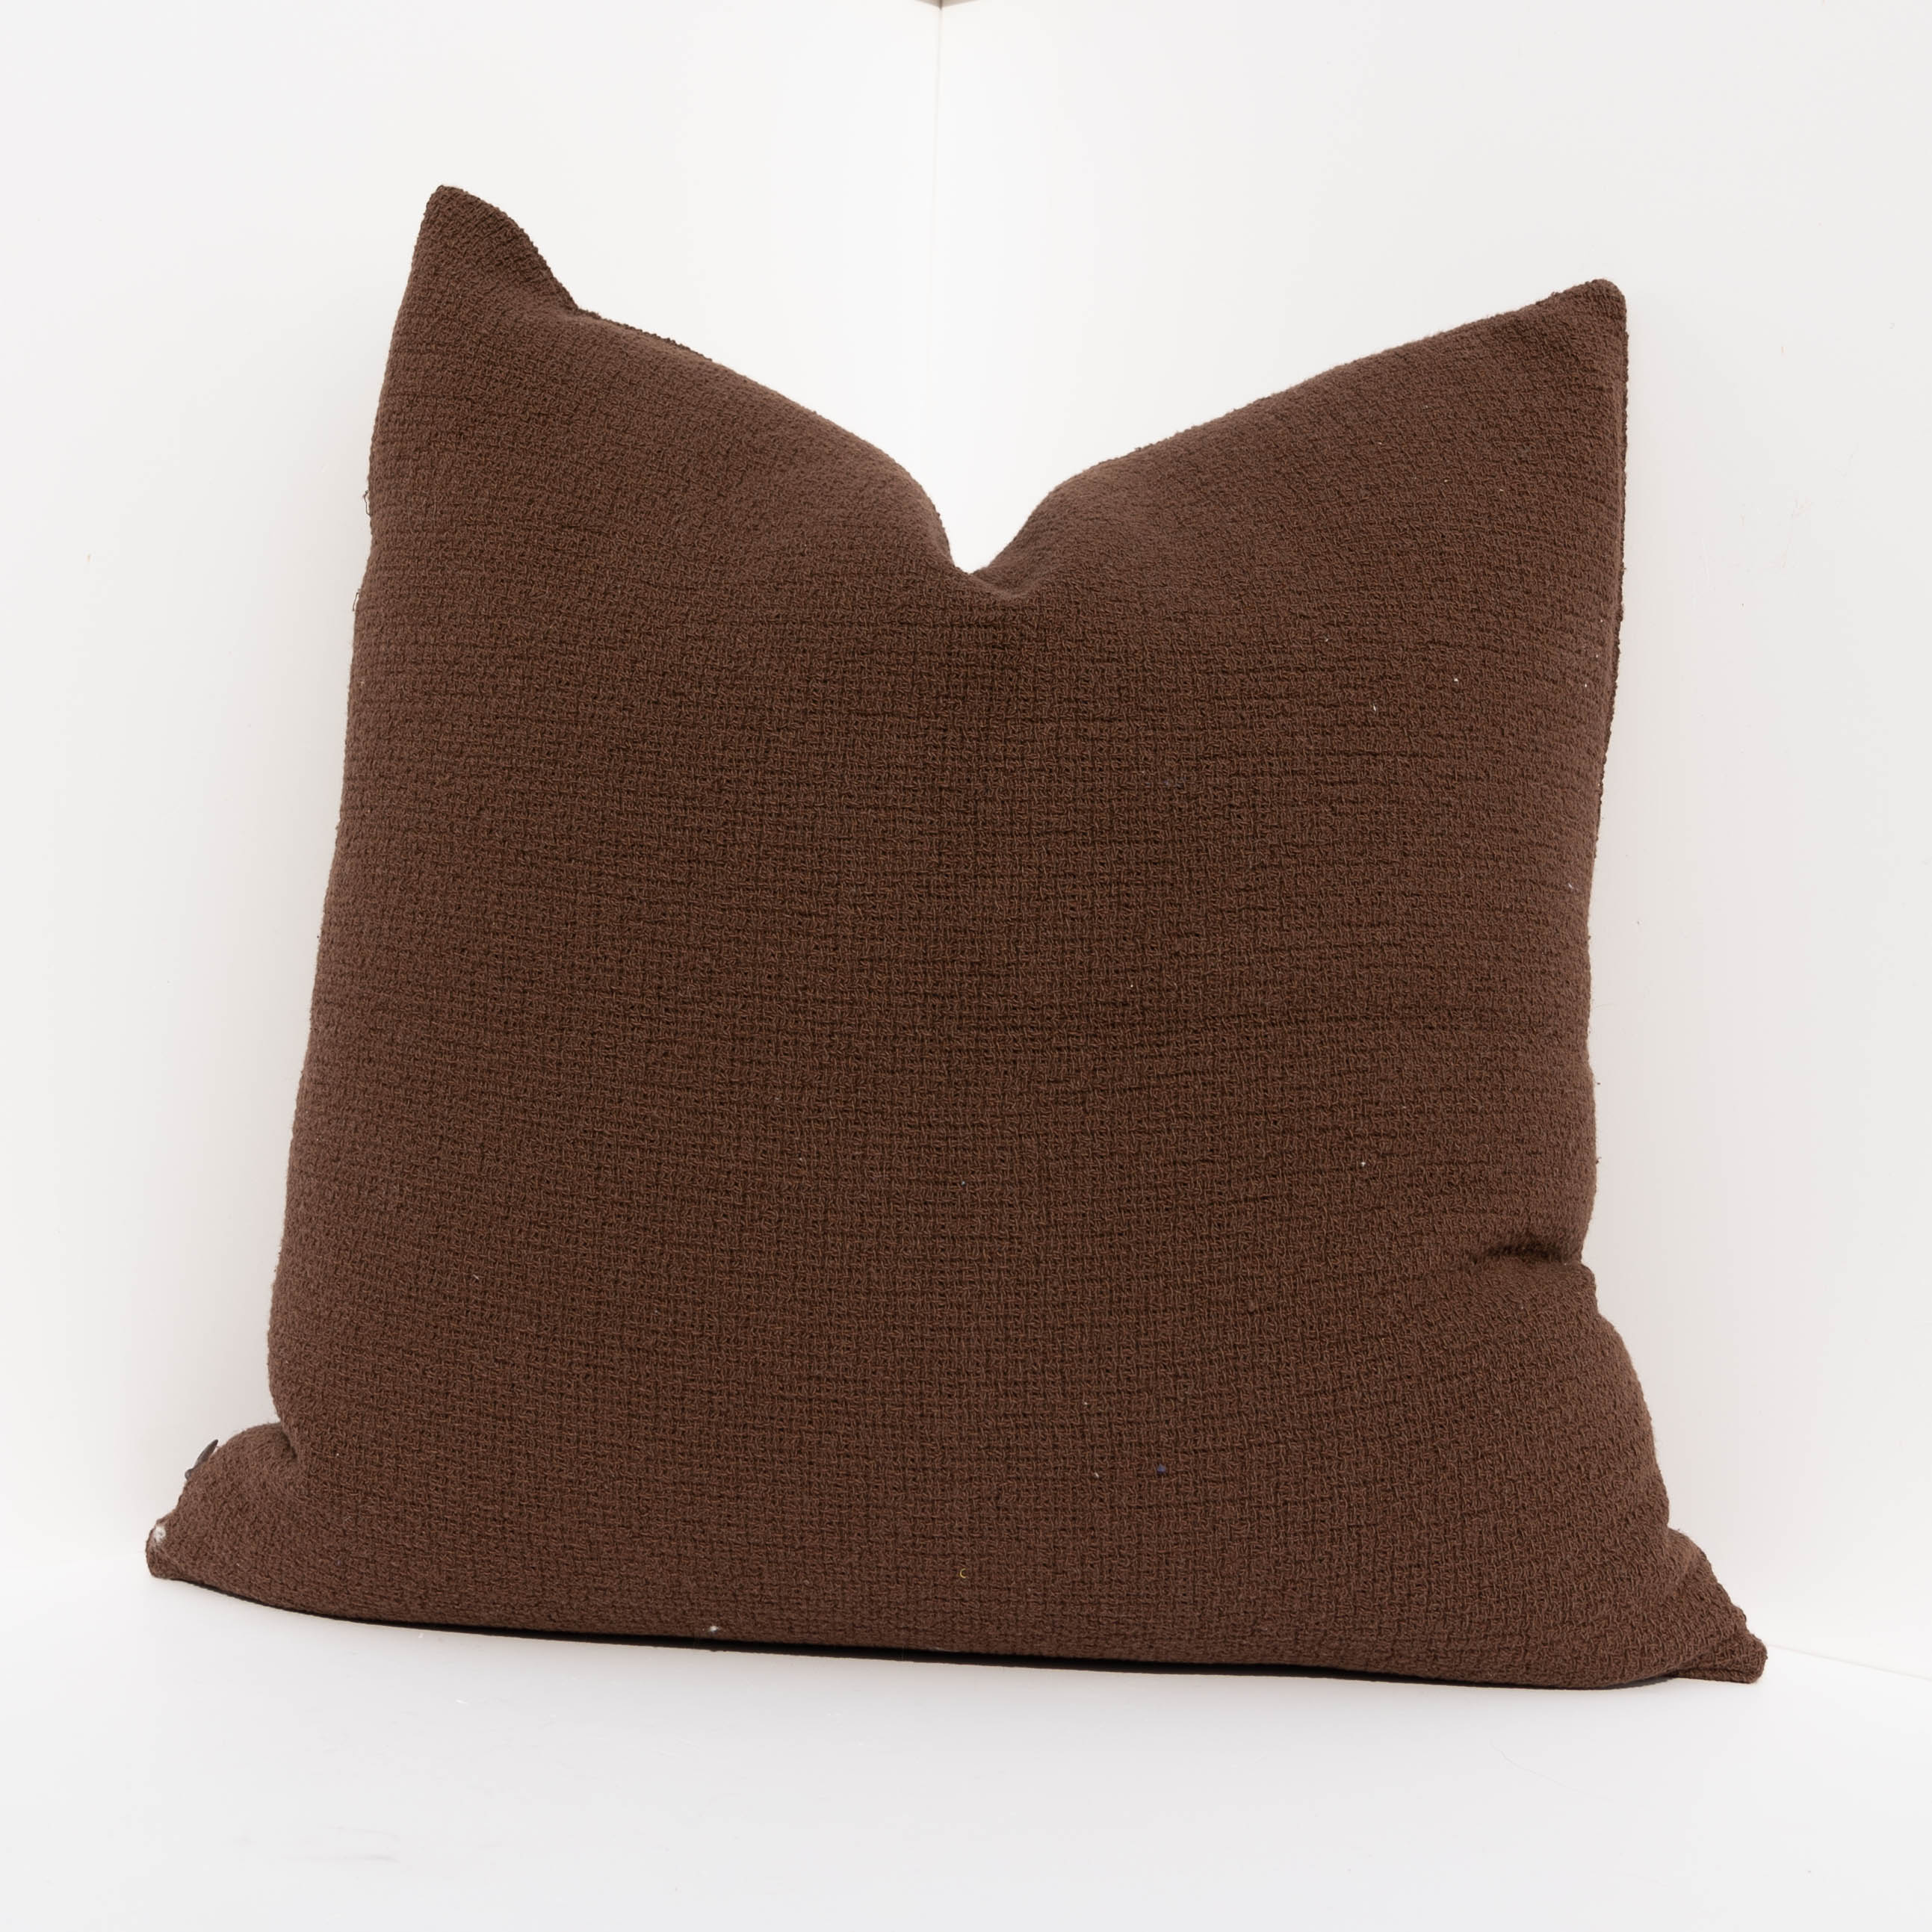 Woven Pillow